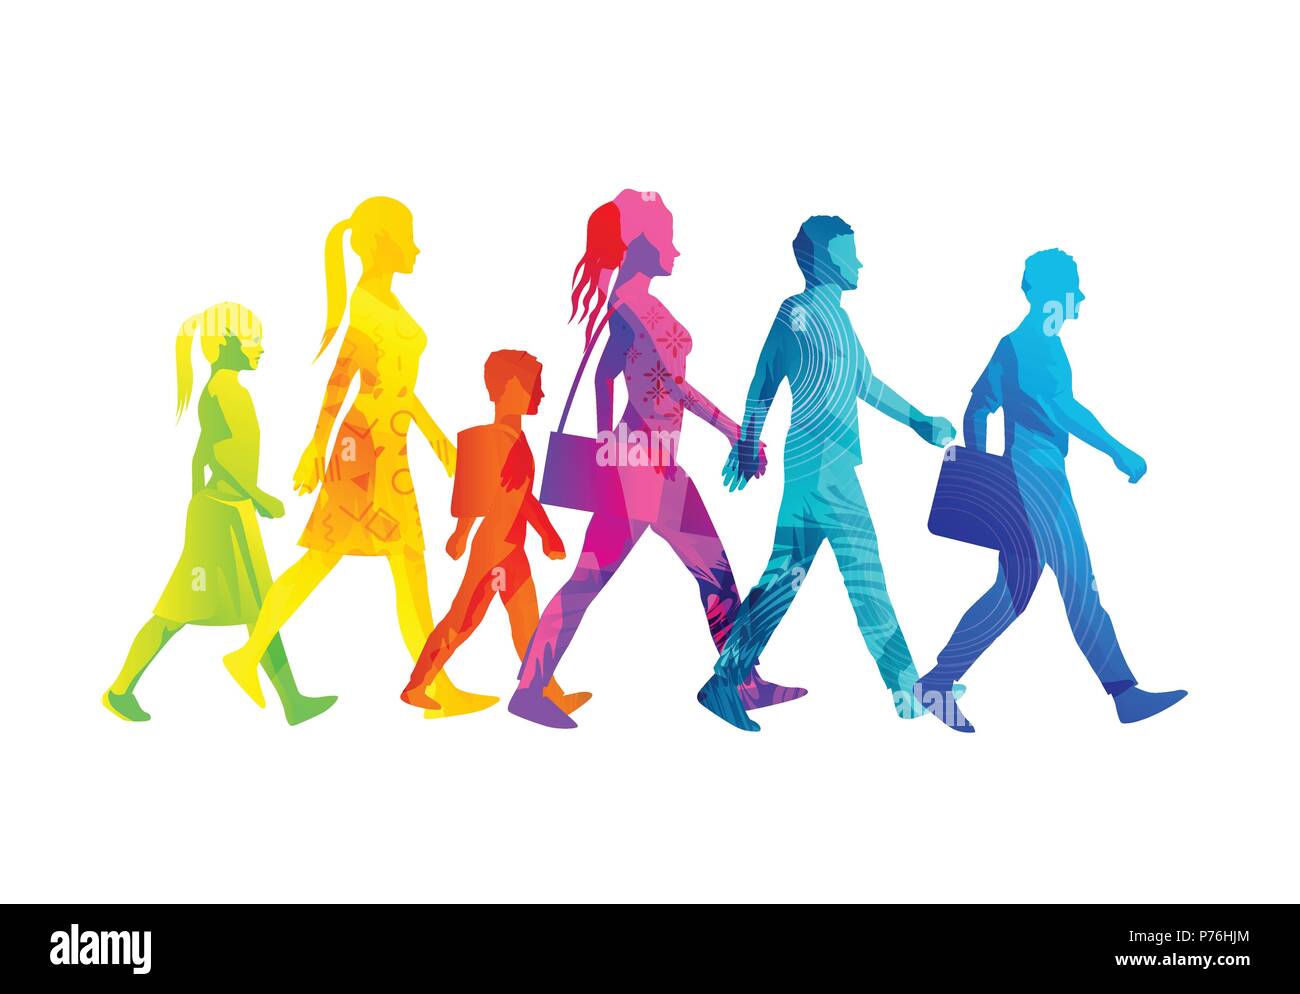 Eine Auswahl von Menschen Silhouetten zu Fuß, darunter Kinder, Frauen und Männer. Bunte Textur vektor Illustration. Stock Vektor